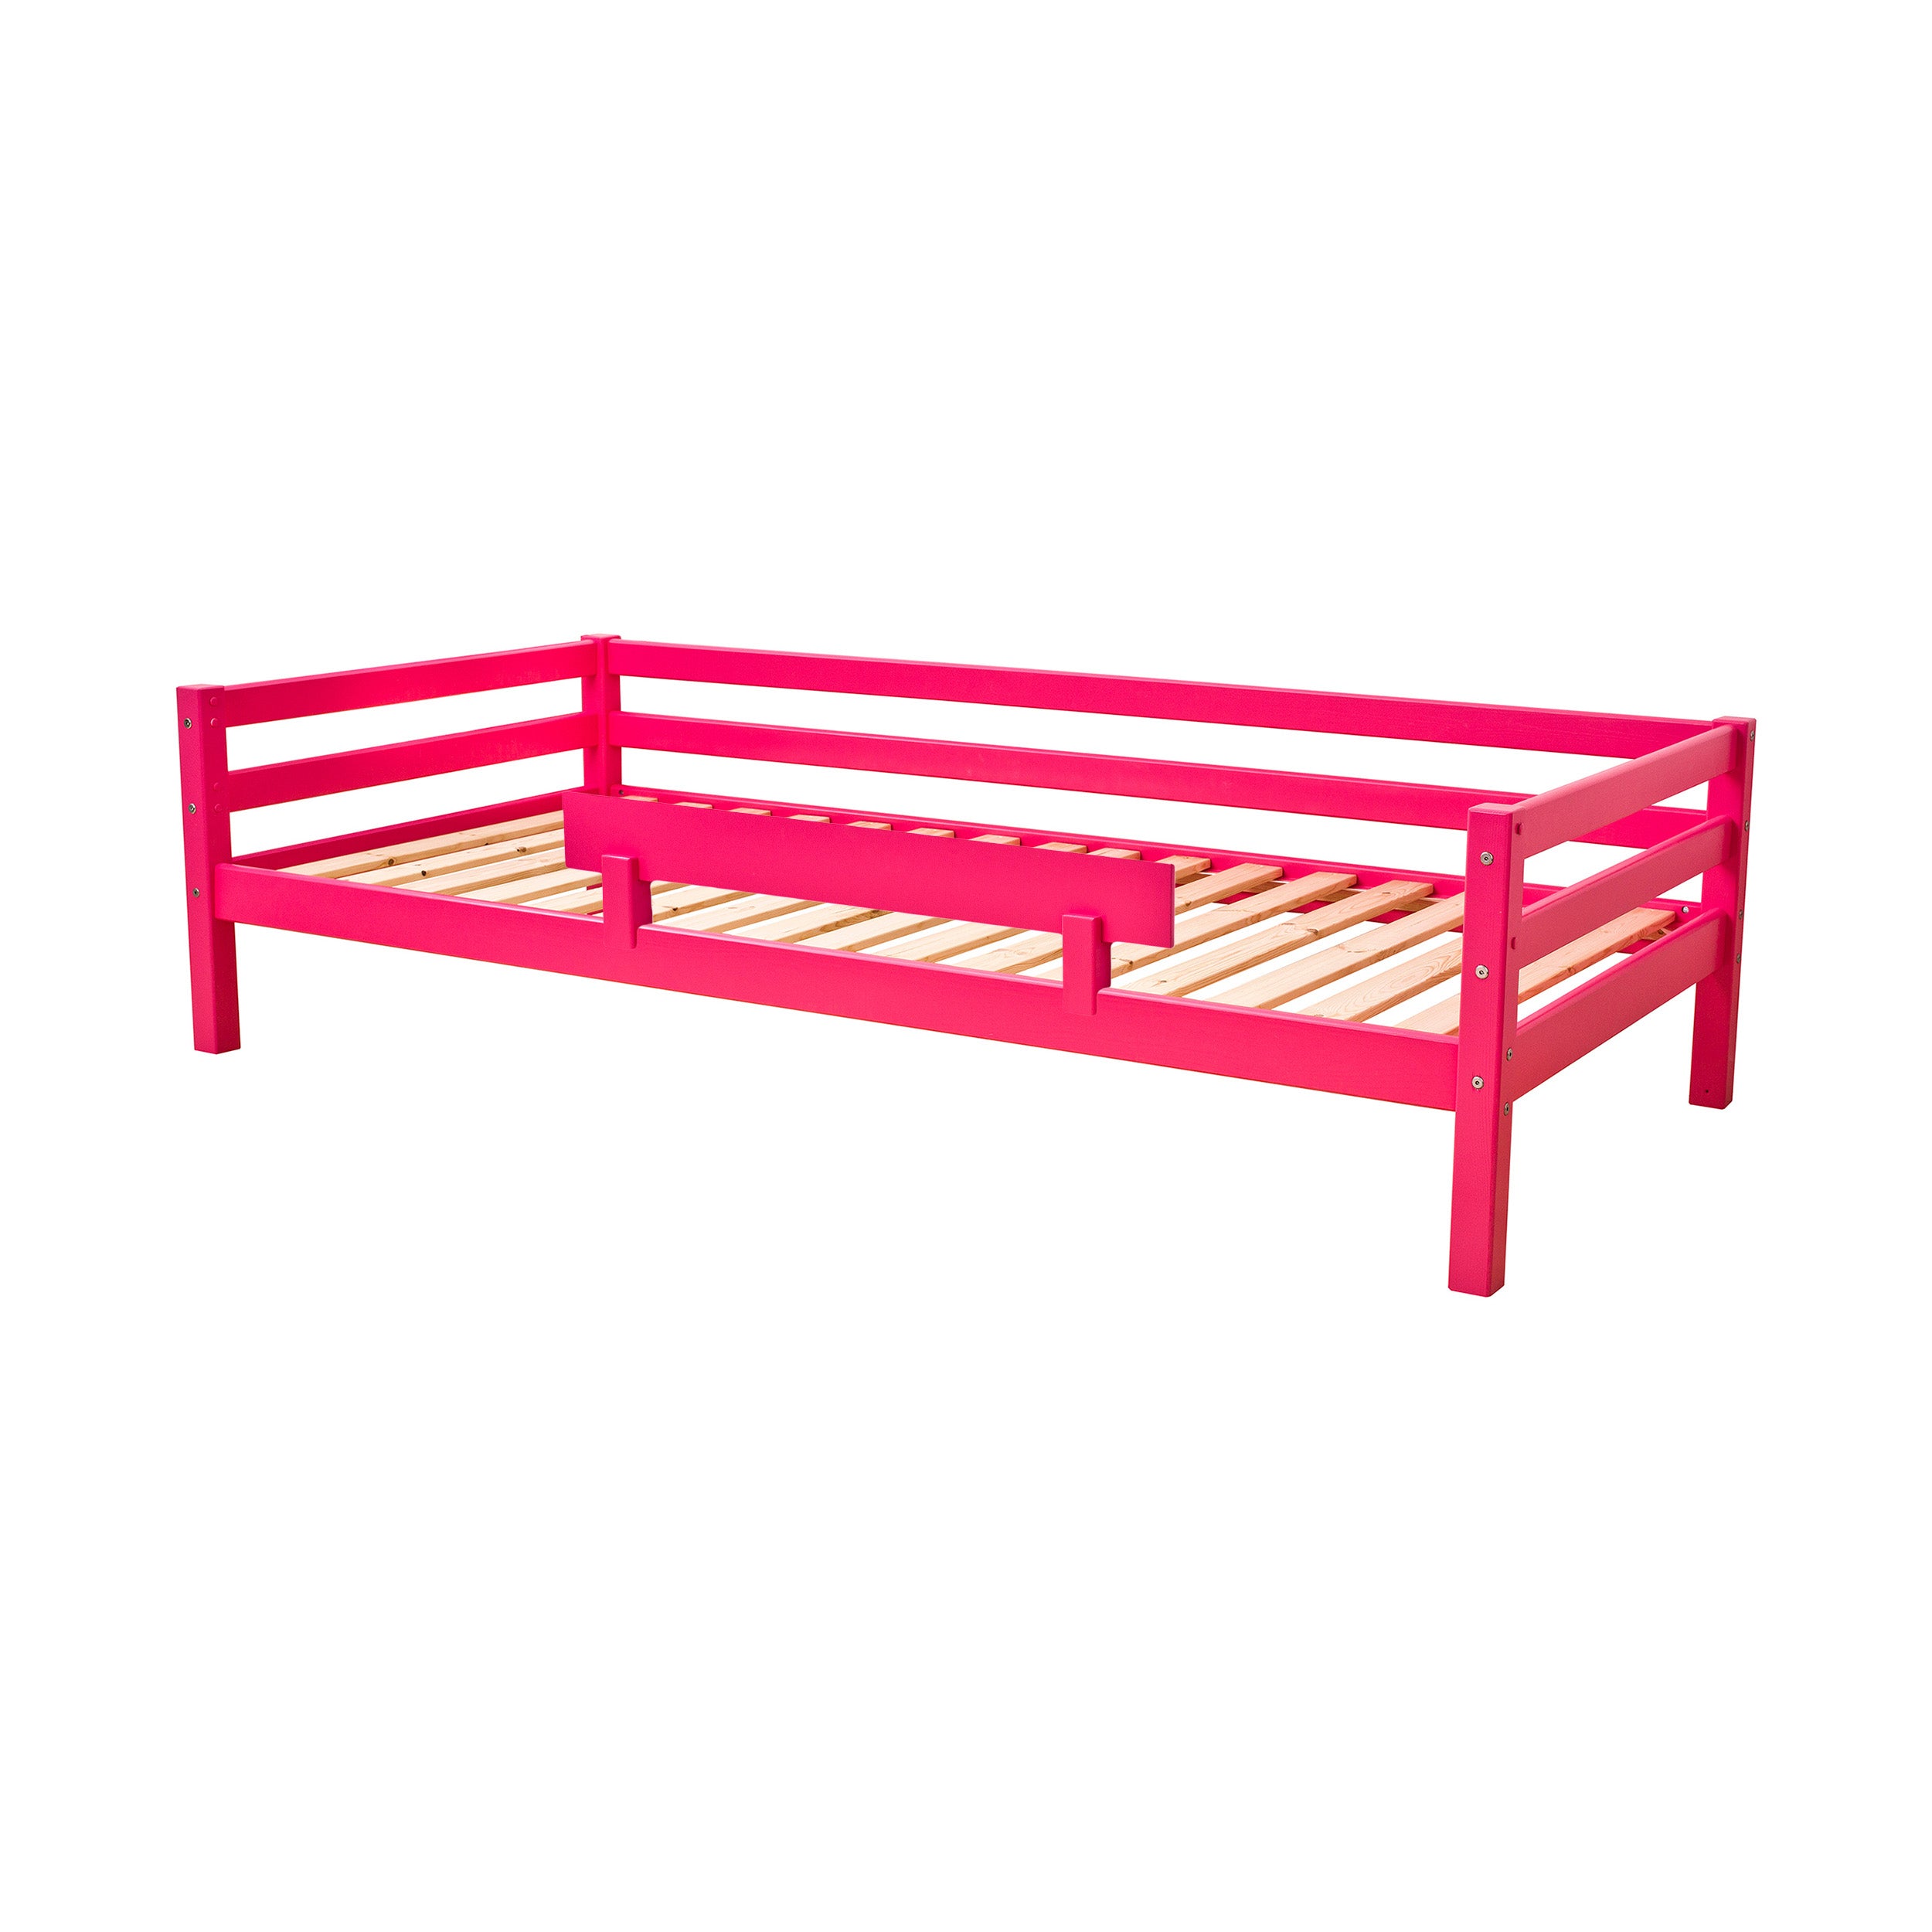 Outlet: ECO Dream seng 90x200 cm med sengehest, Pink